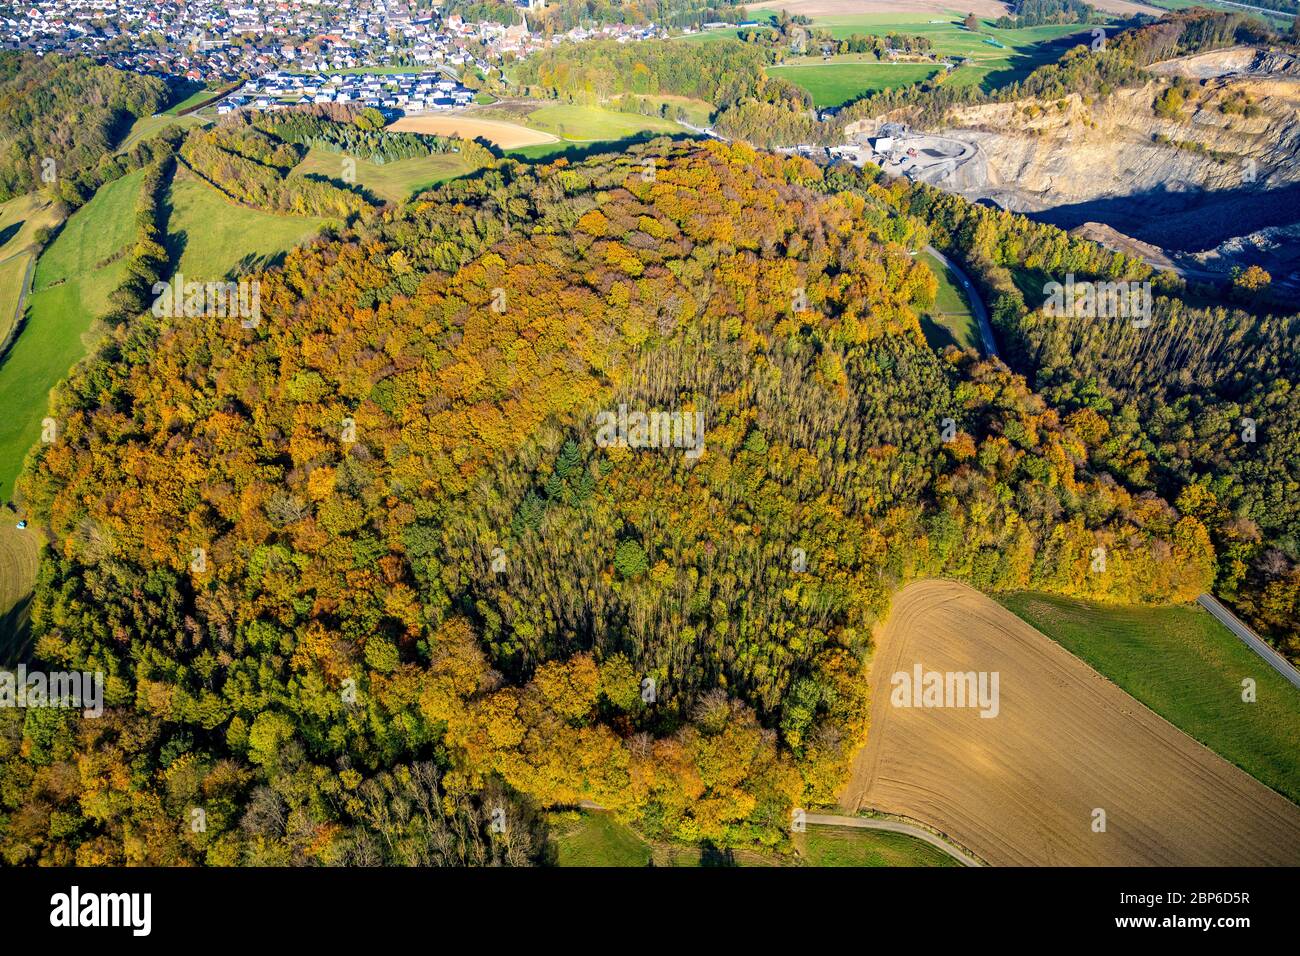 Vue aérienne, forêt d'automne aux couleurs vives, près de la carrière Habbel, Arnsberg, pays aigre, Rhénanie-du-Nord-Westphalie, Allemagne Banque D'Images